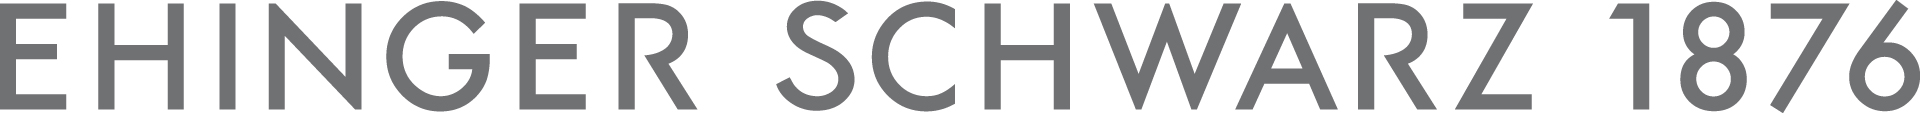 Logo-Ehinger-Schwarz